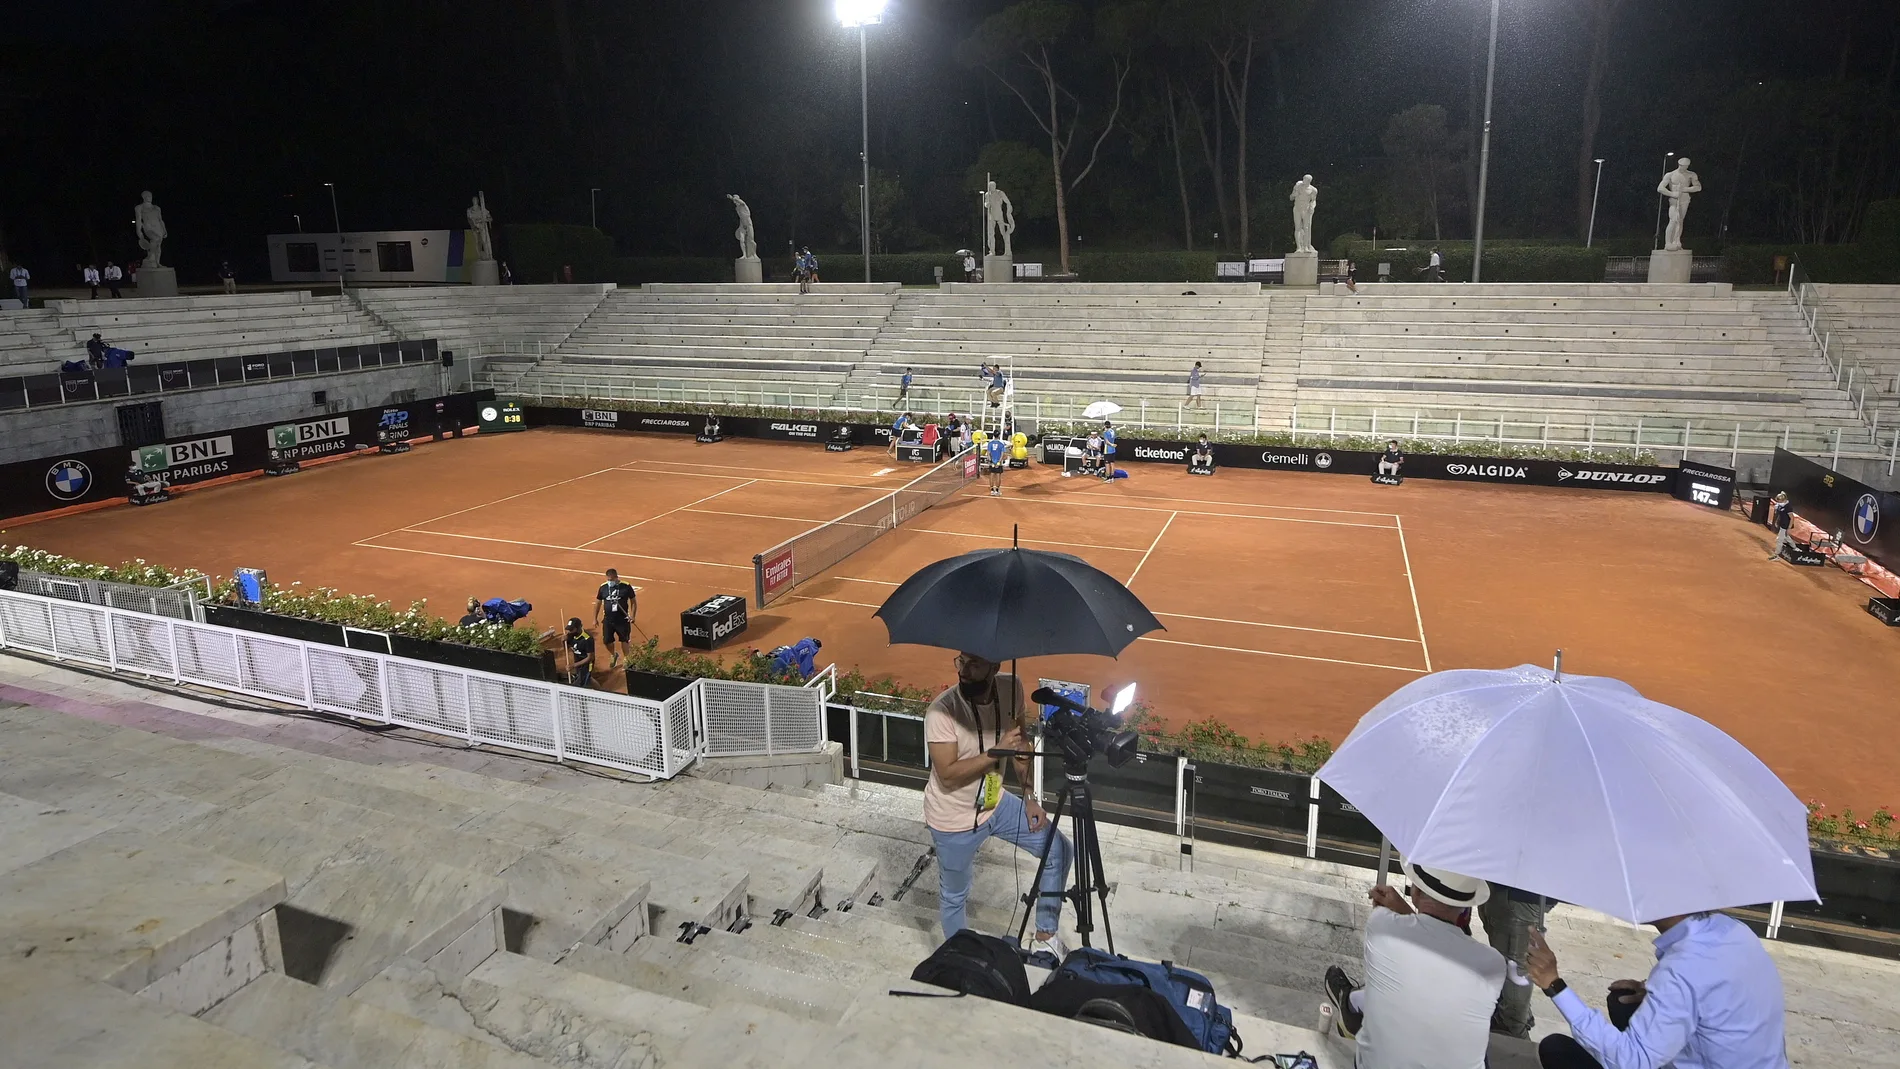 La lluvia en el Foro Itálico obligó a detener el partido de Garbiñe tras el primer set